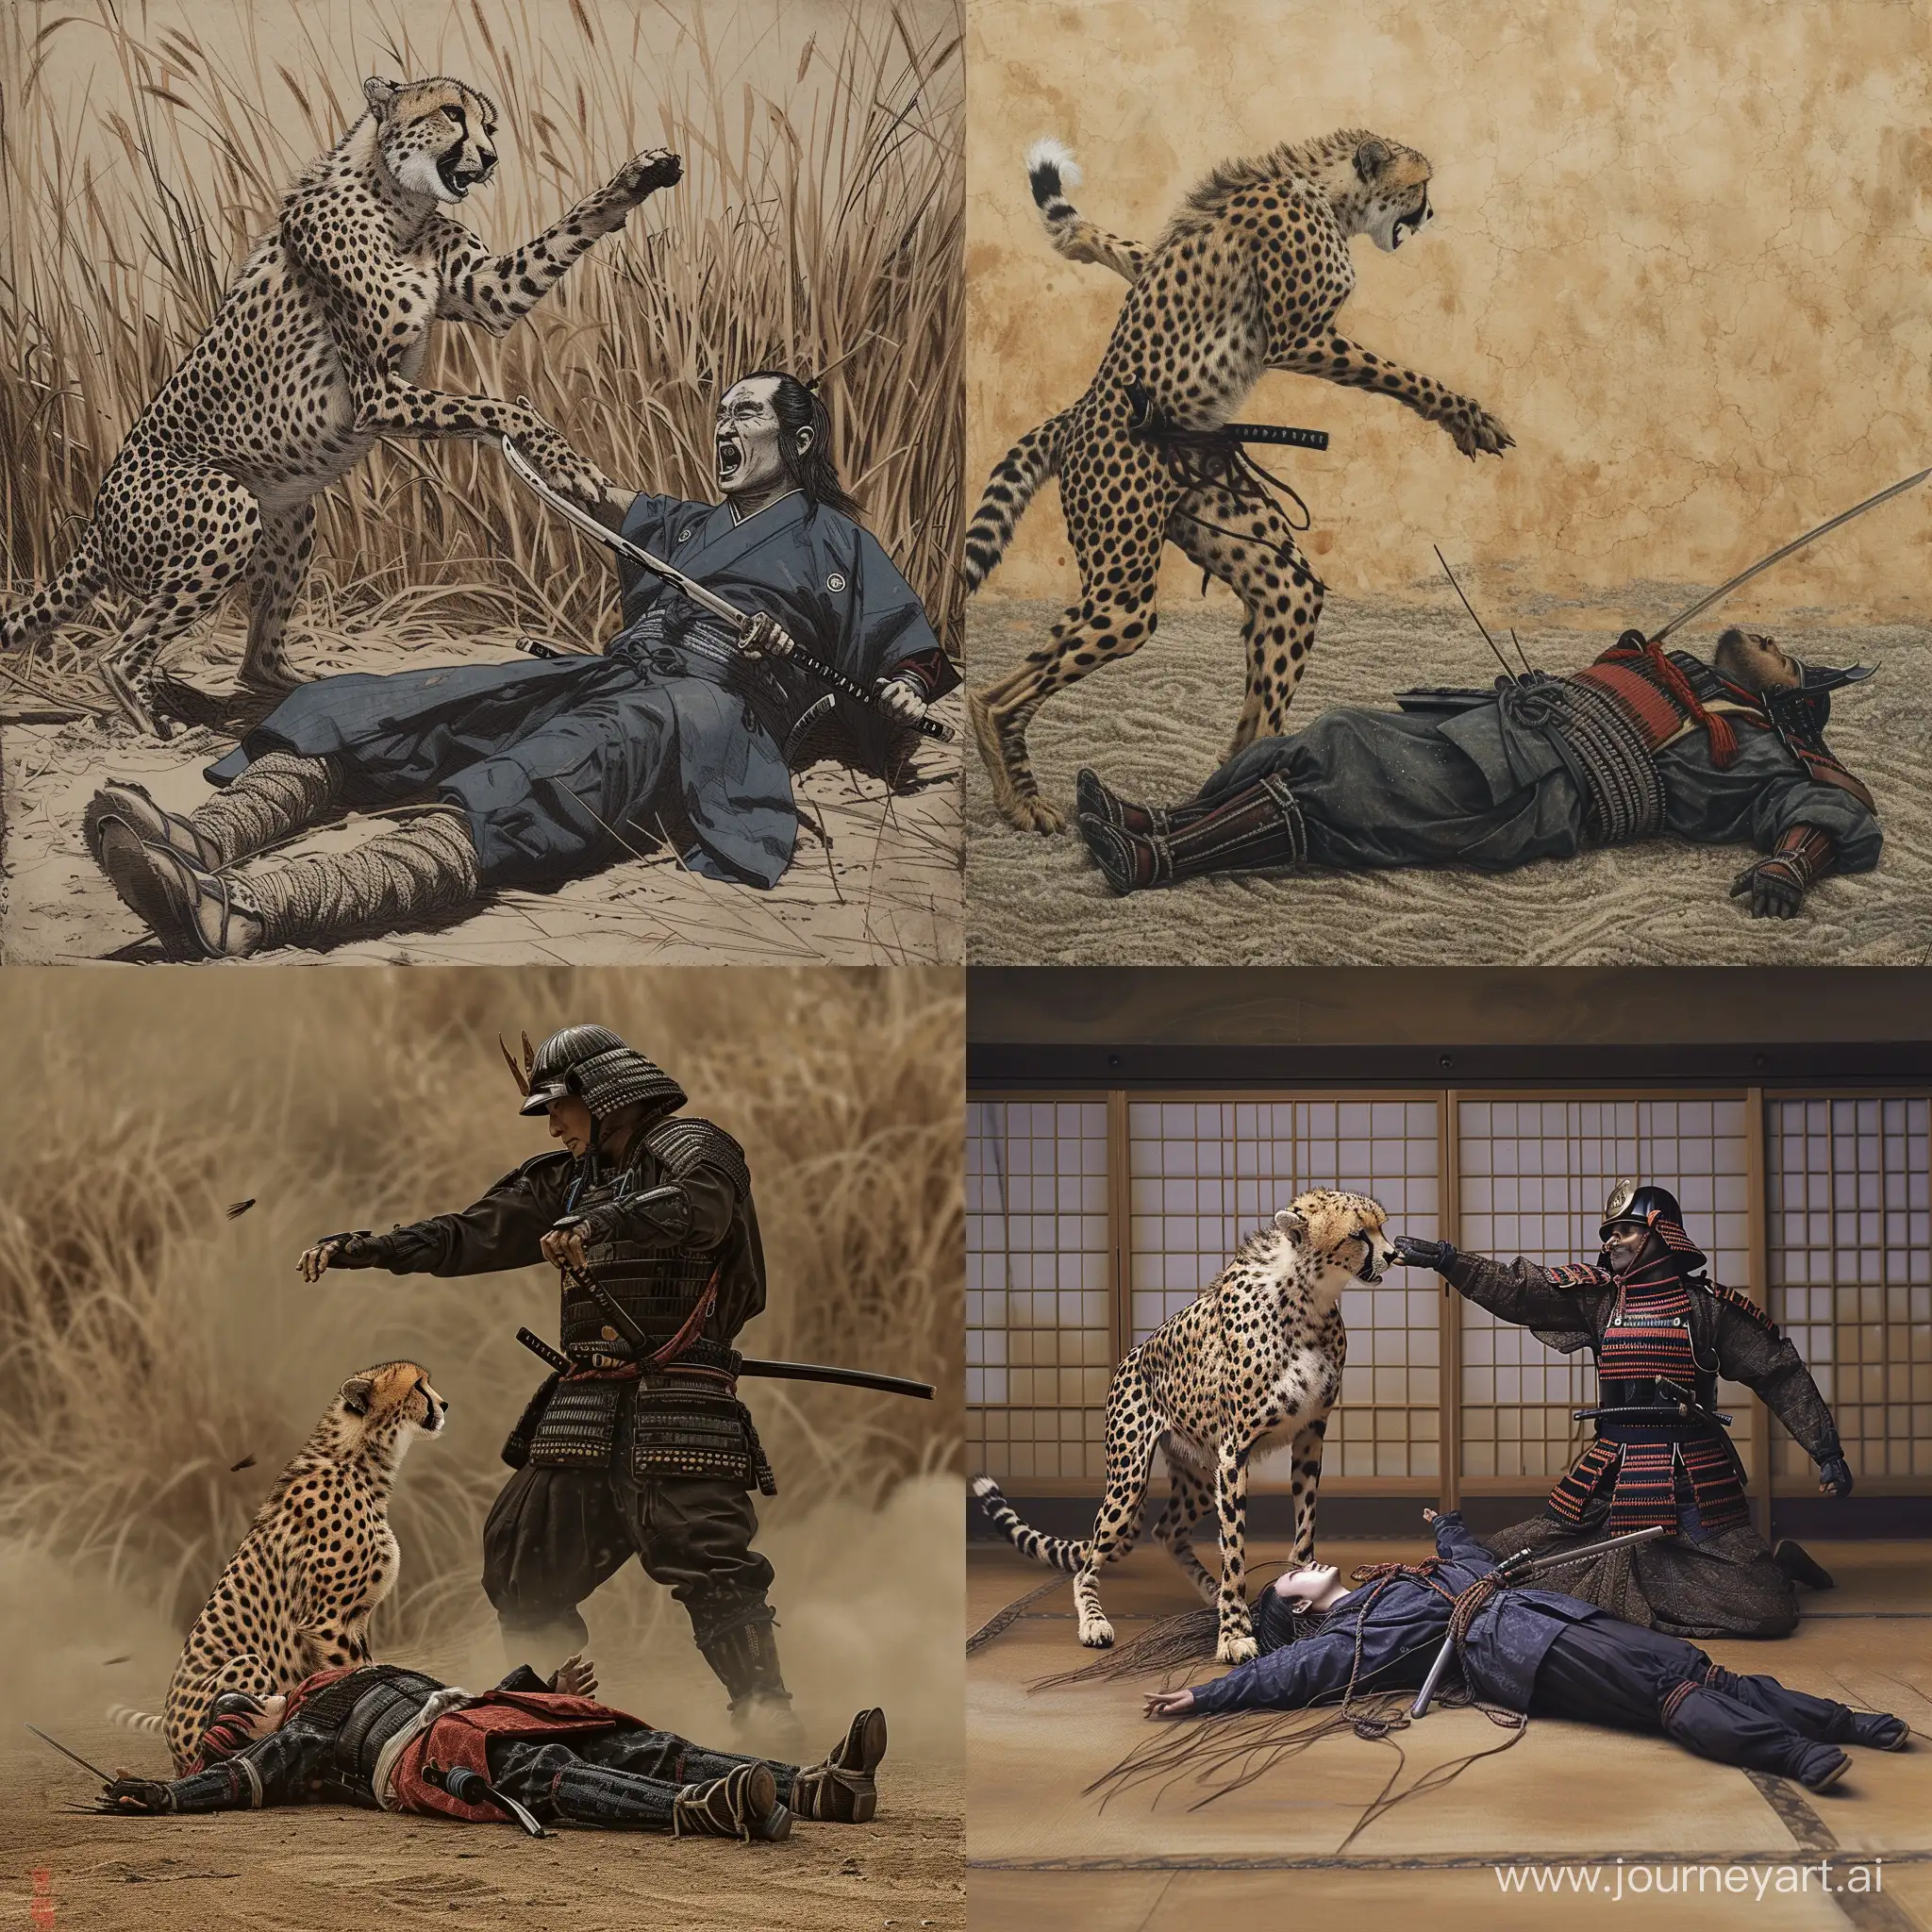 Cheetah-Ambush-Samurai-Defending-on-Ground